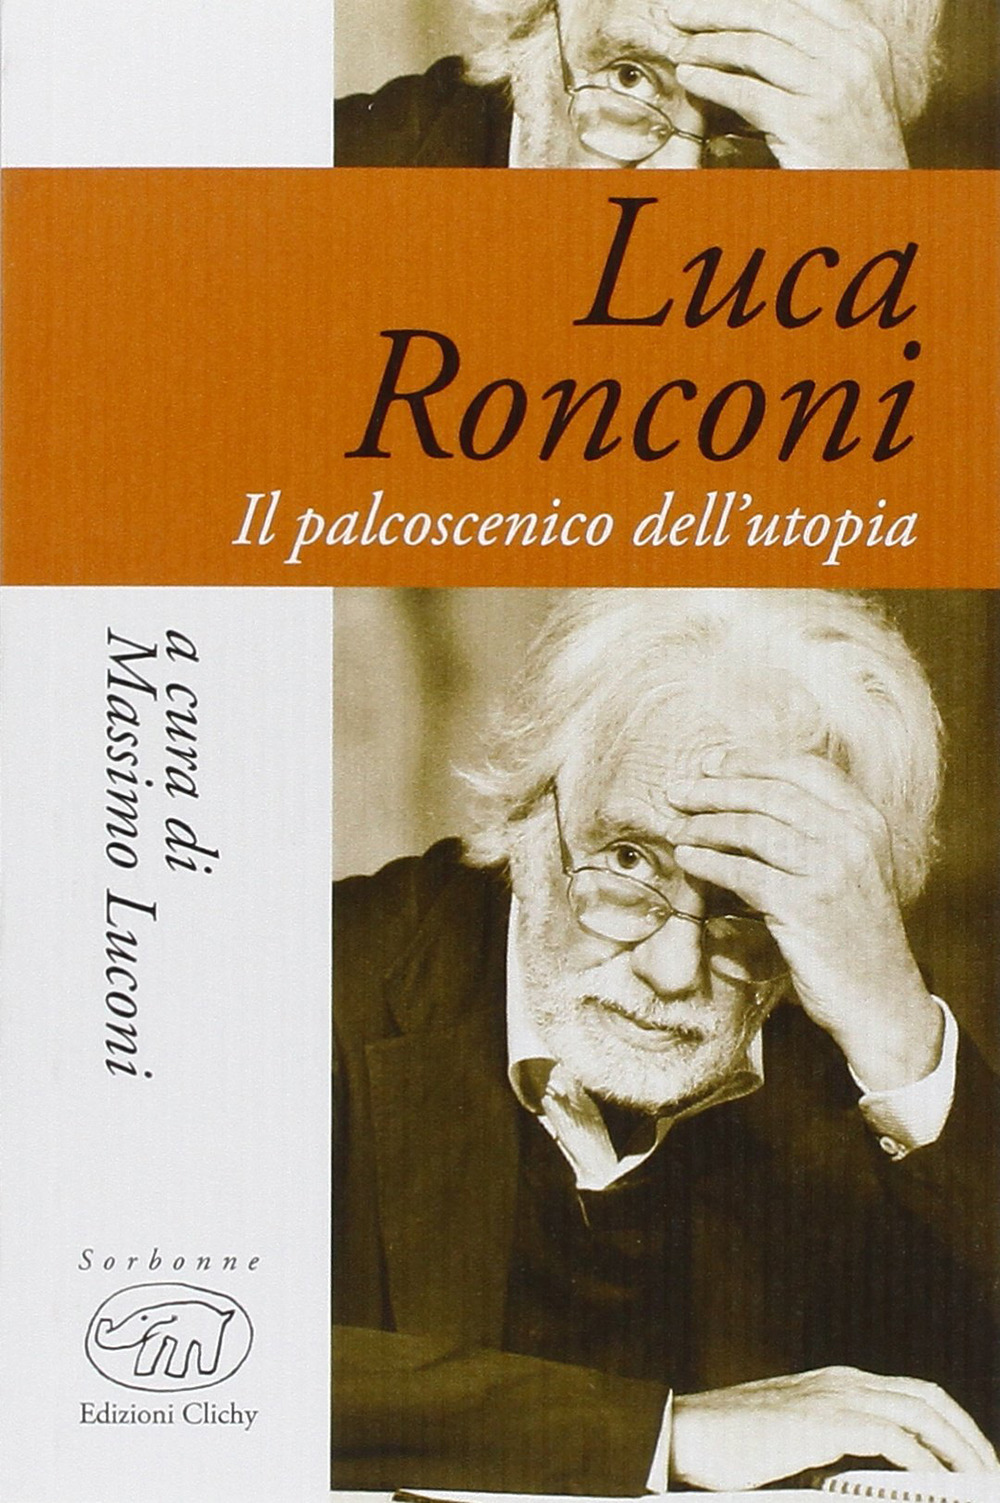 Luca Ronconi. Il palcoscenico dell'utopia